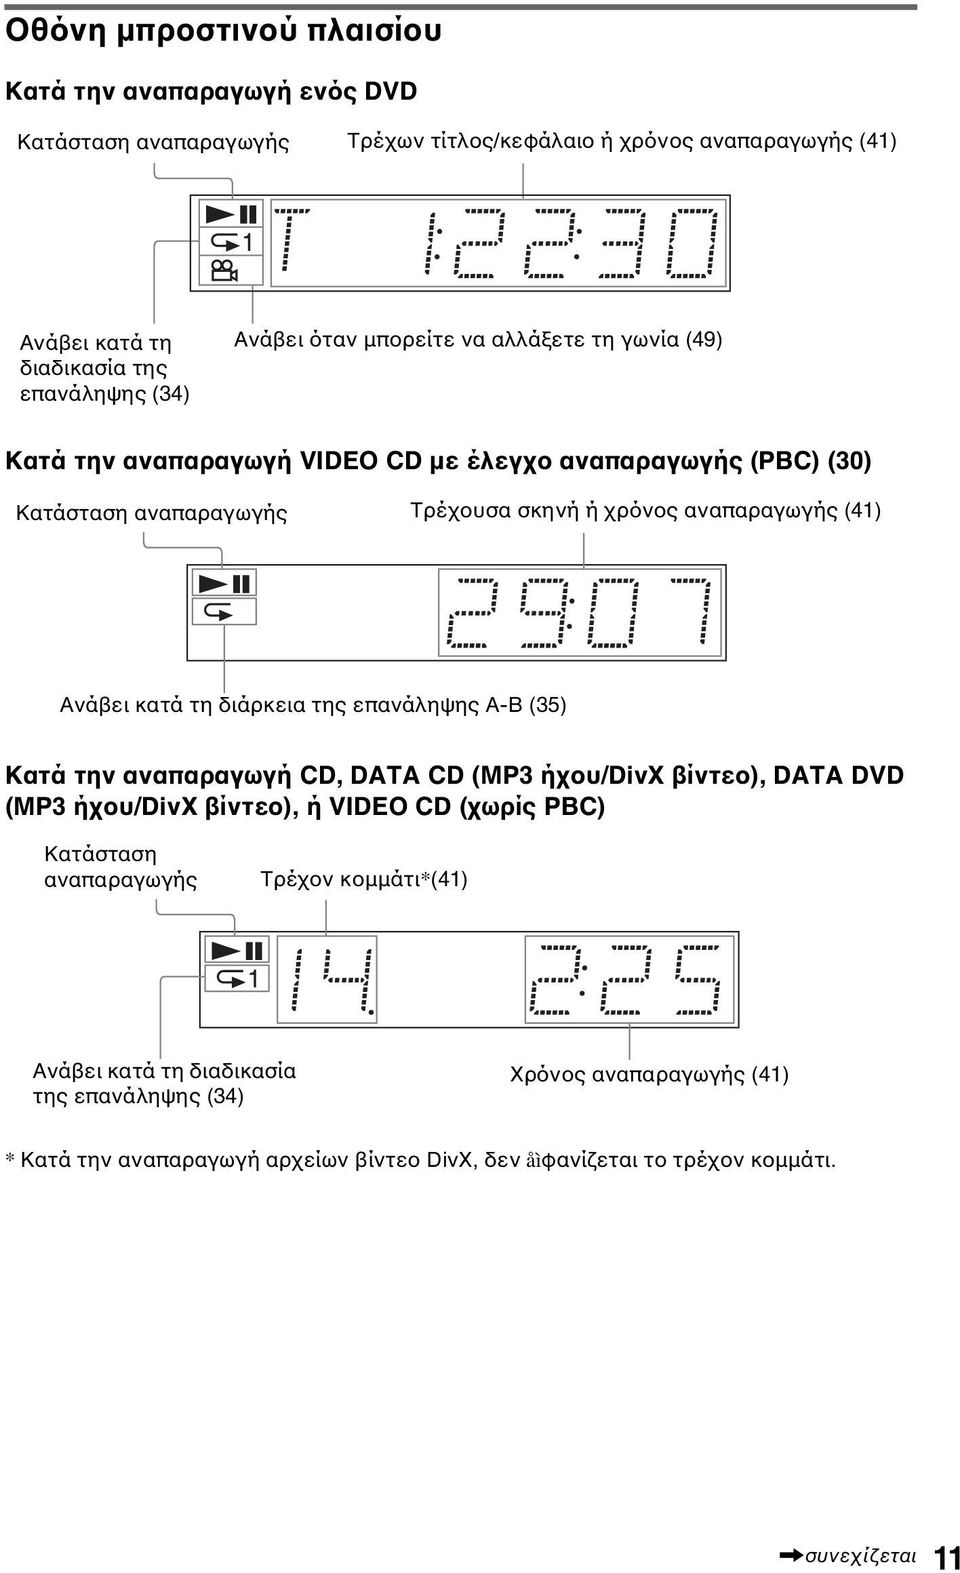 Ανάβει κατά τη διάρκεια της επανάληψης A-B (35) Κατά την αναπαραγωγή CD, DATA CD (MP3 ήχου/divx βίντεο), DATA DVD (MP3 ήχου/divx βίντεο), ή VIDEO CD (χωρίς PBC) Κατάσταση